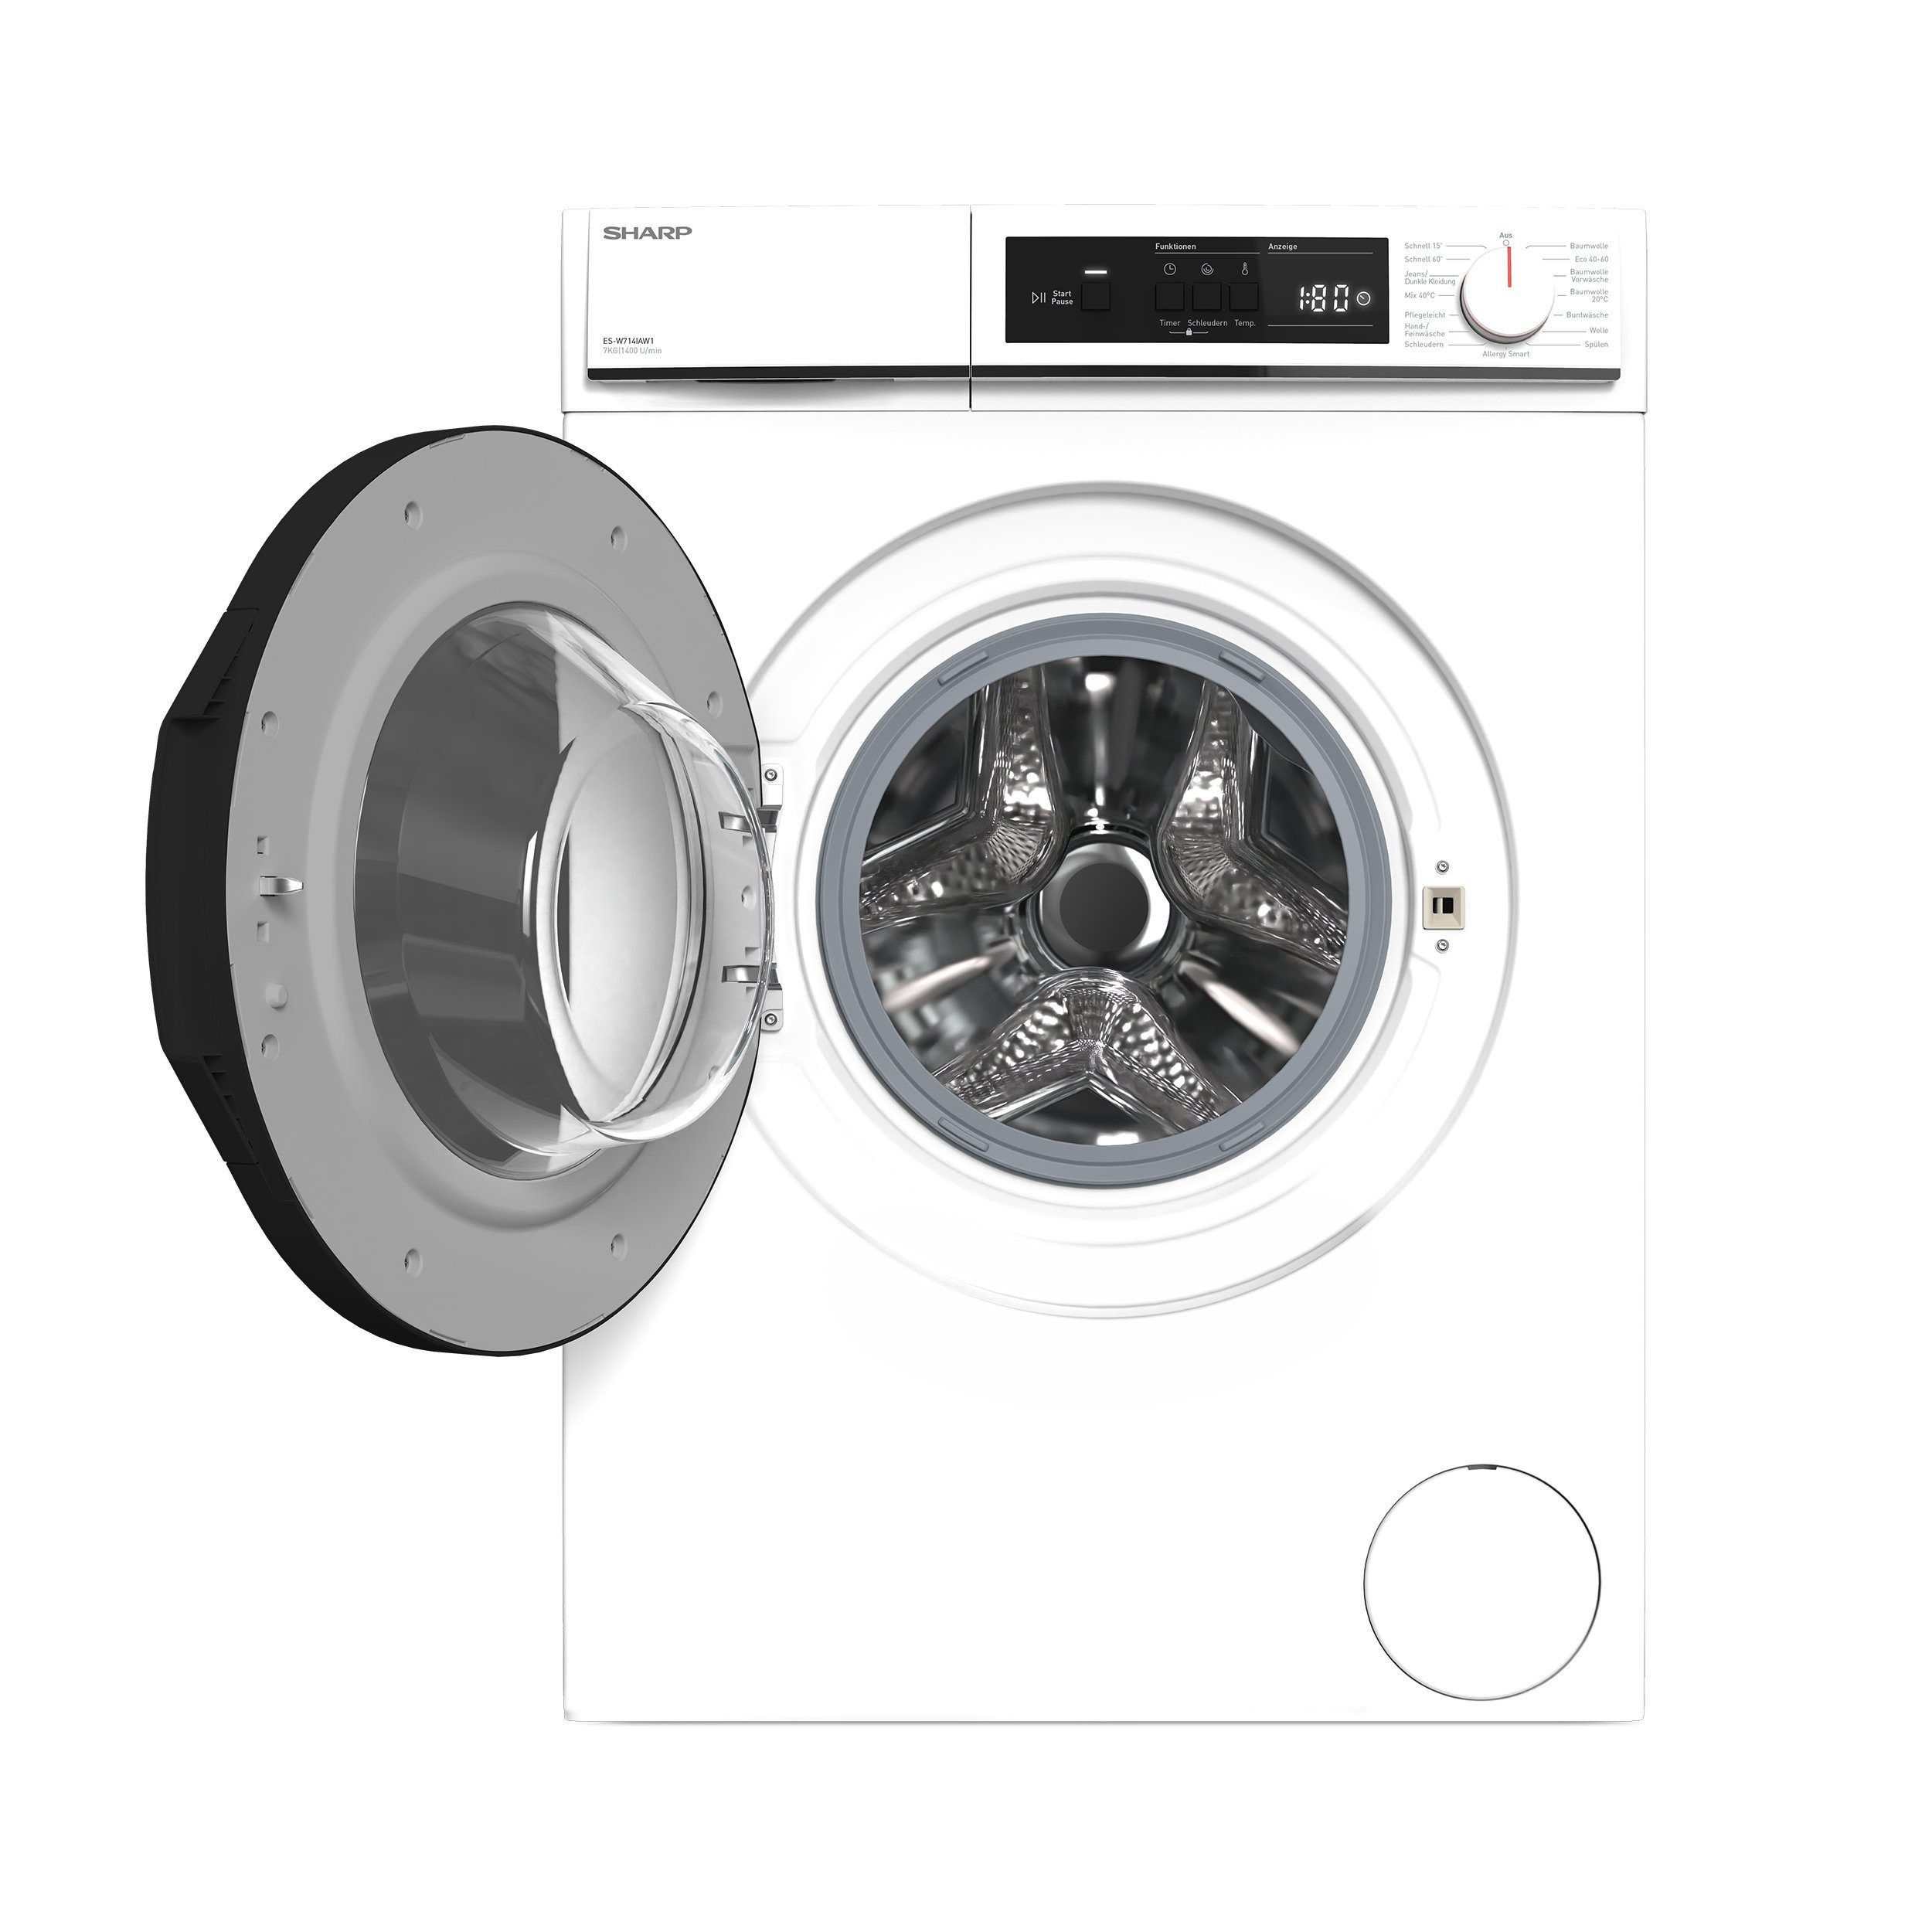 Sharp Waschmaschine AquaStop, 7 Weiß Motor, 15 ES-W714IAW1-DE, Überlaufschutz, U/min, LED-Diplay, 1400 Inverter Programme kg